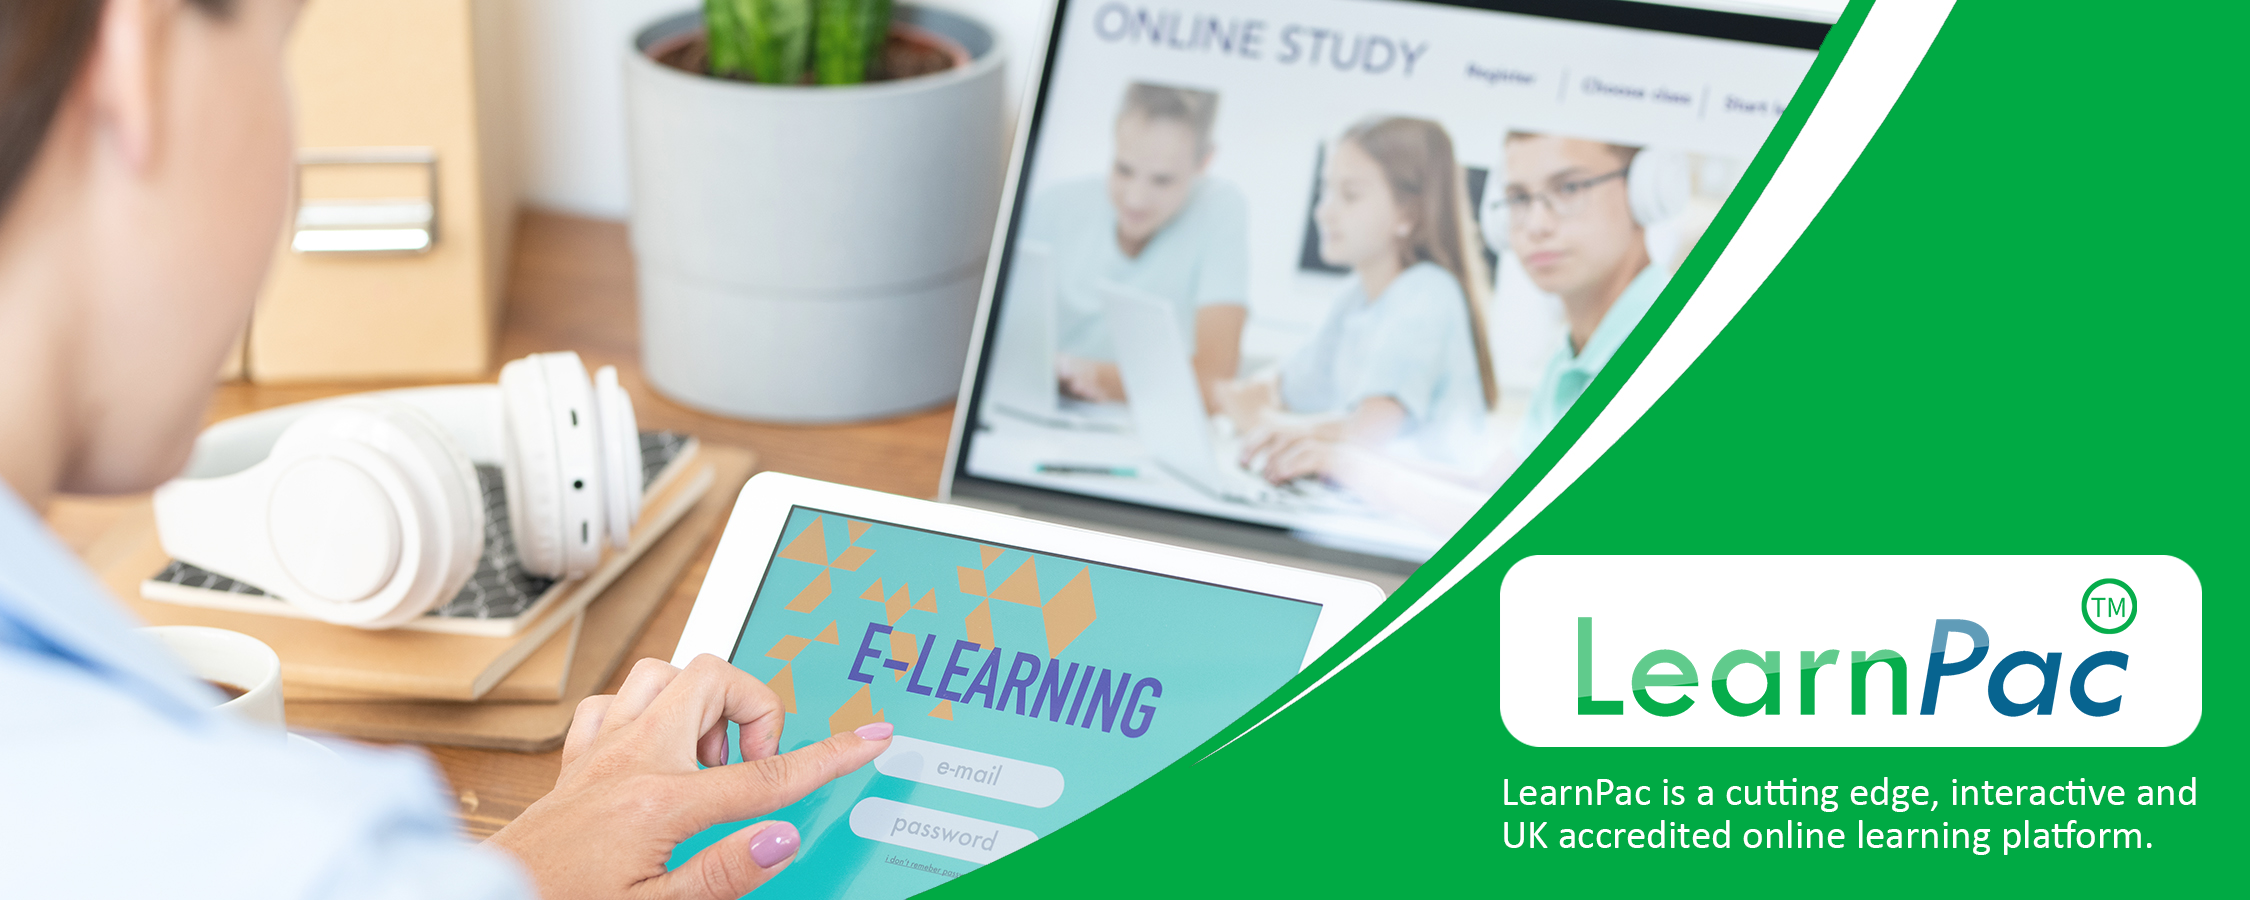 Women in Leadership Training - Online Learning Courses - E-Learning Courses - LearnPac Systems UK -